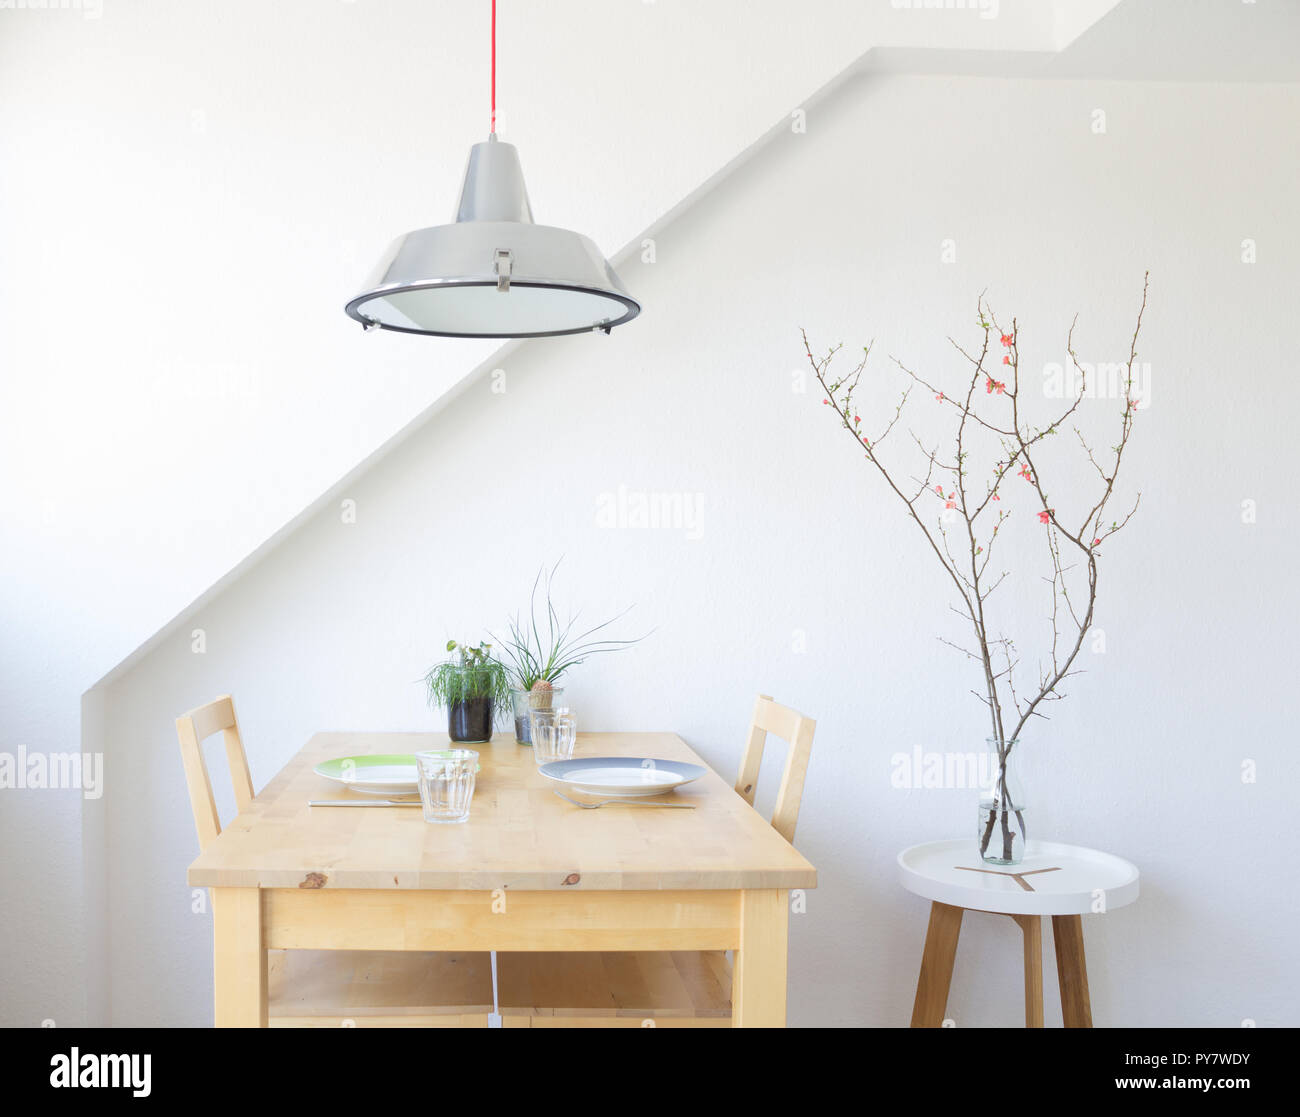 Modernes Wohnen: Küche Tabelle unter hängenden Industrie design Lampe mit  Sukkulenten und Quitte Zweig eingerichtet Stockfotografie - Alamy